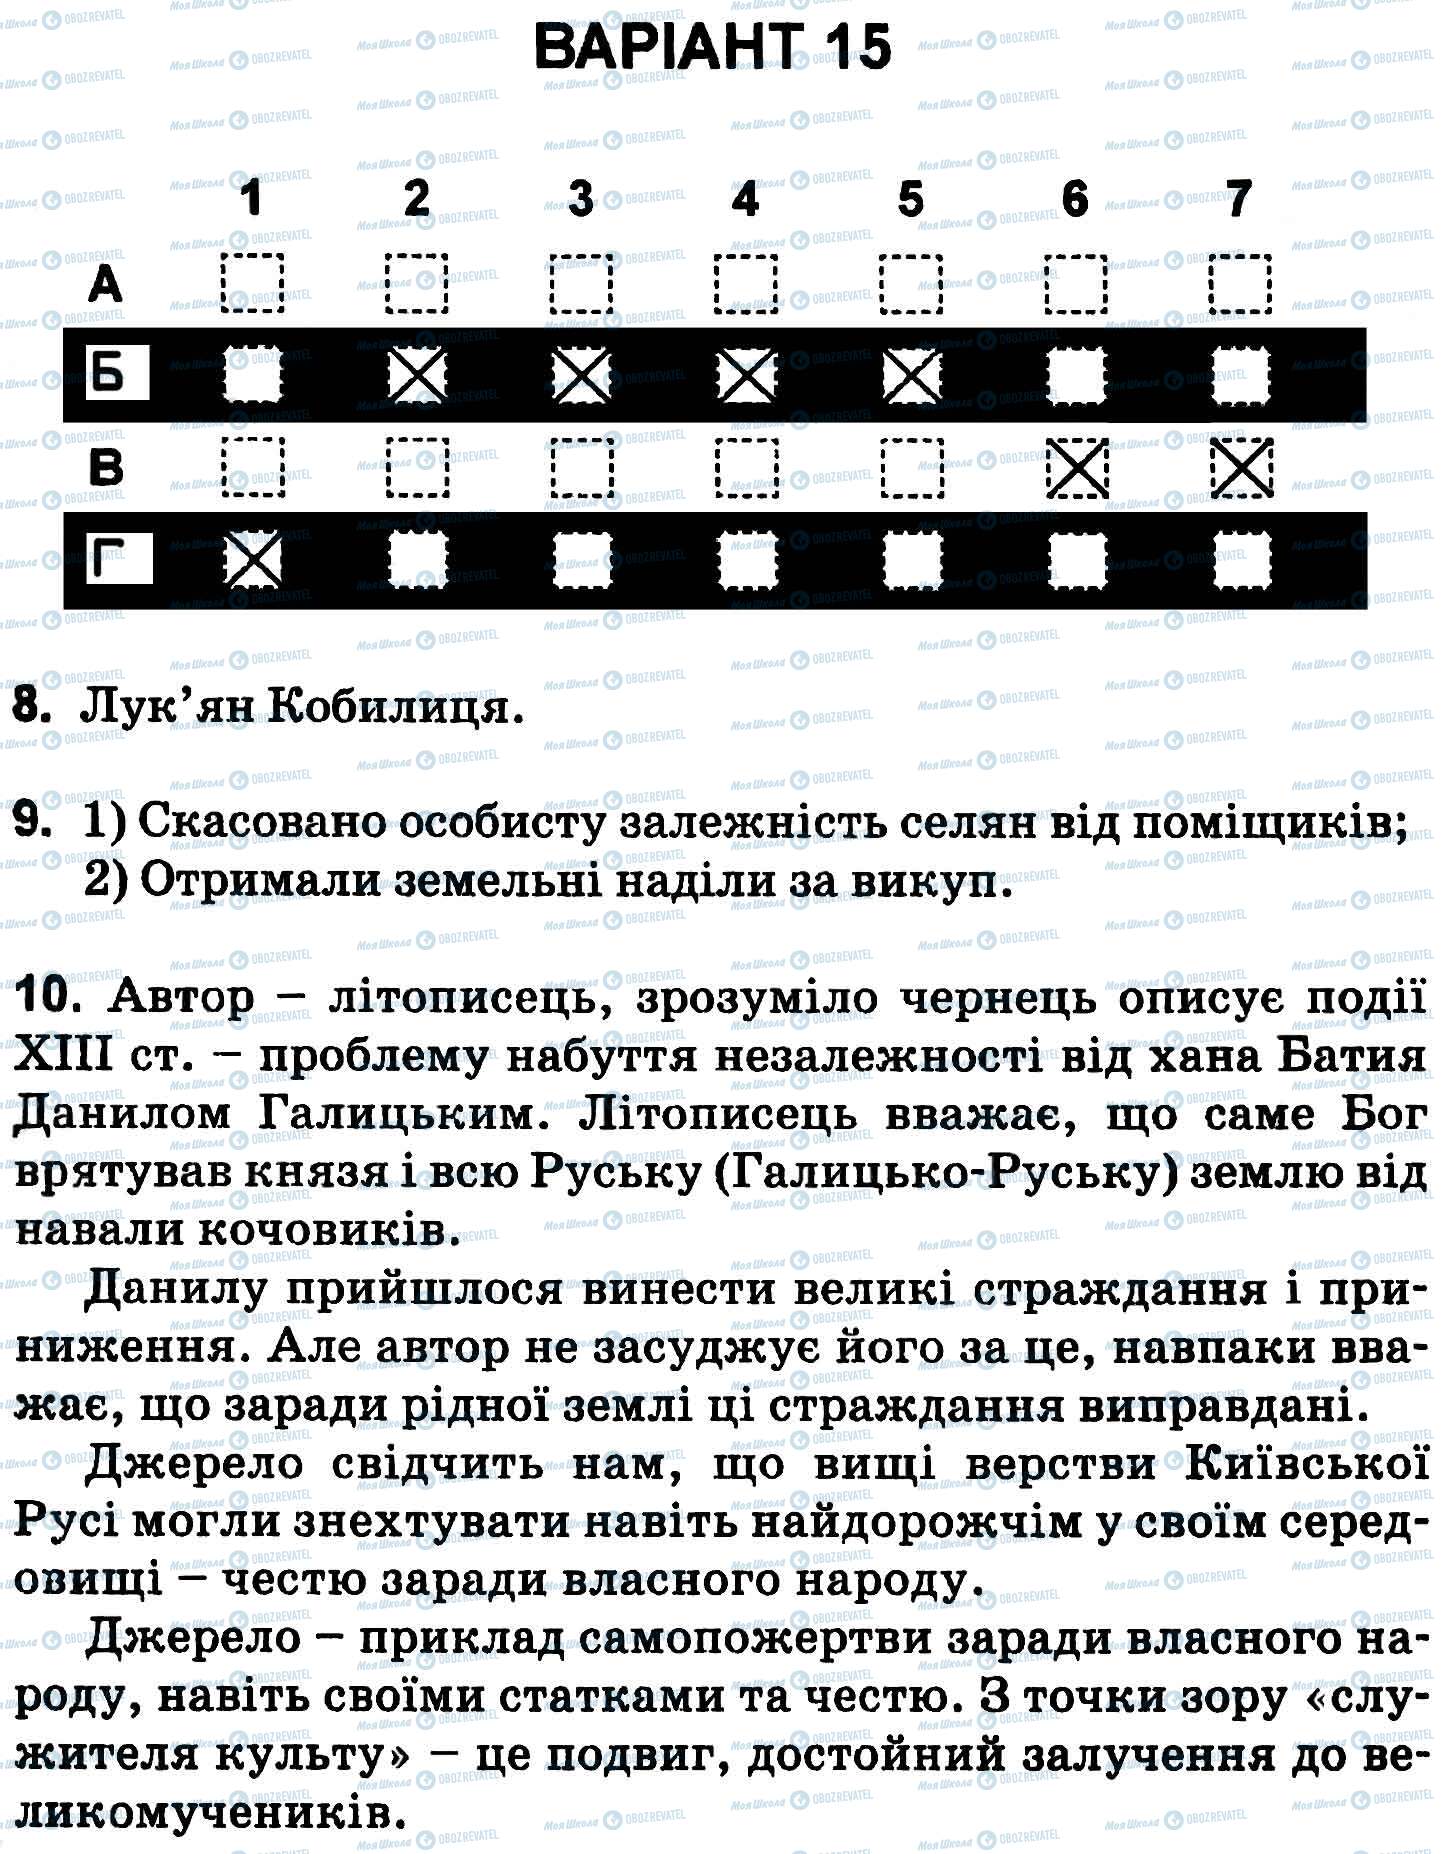 ДПА История Украины 9 класс страница 1-10